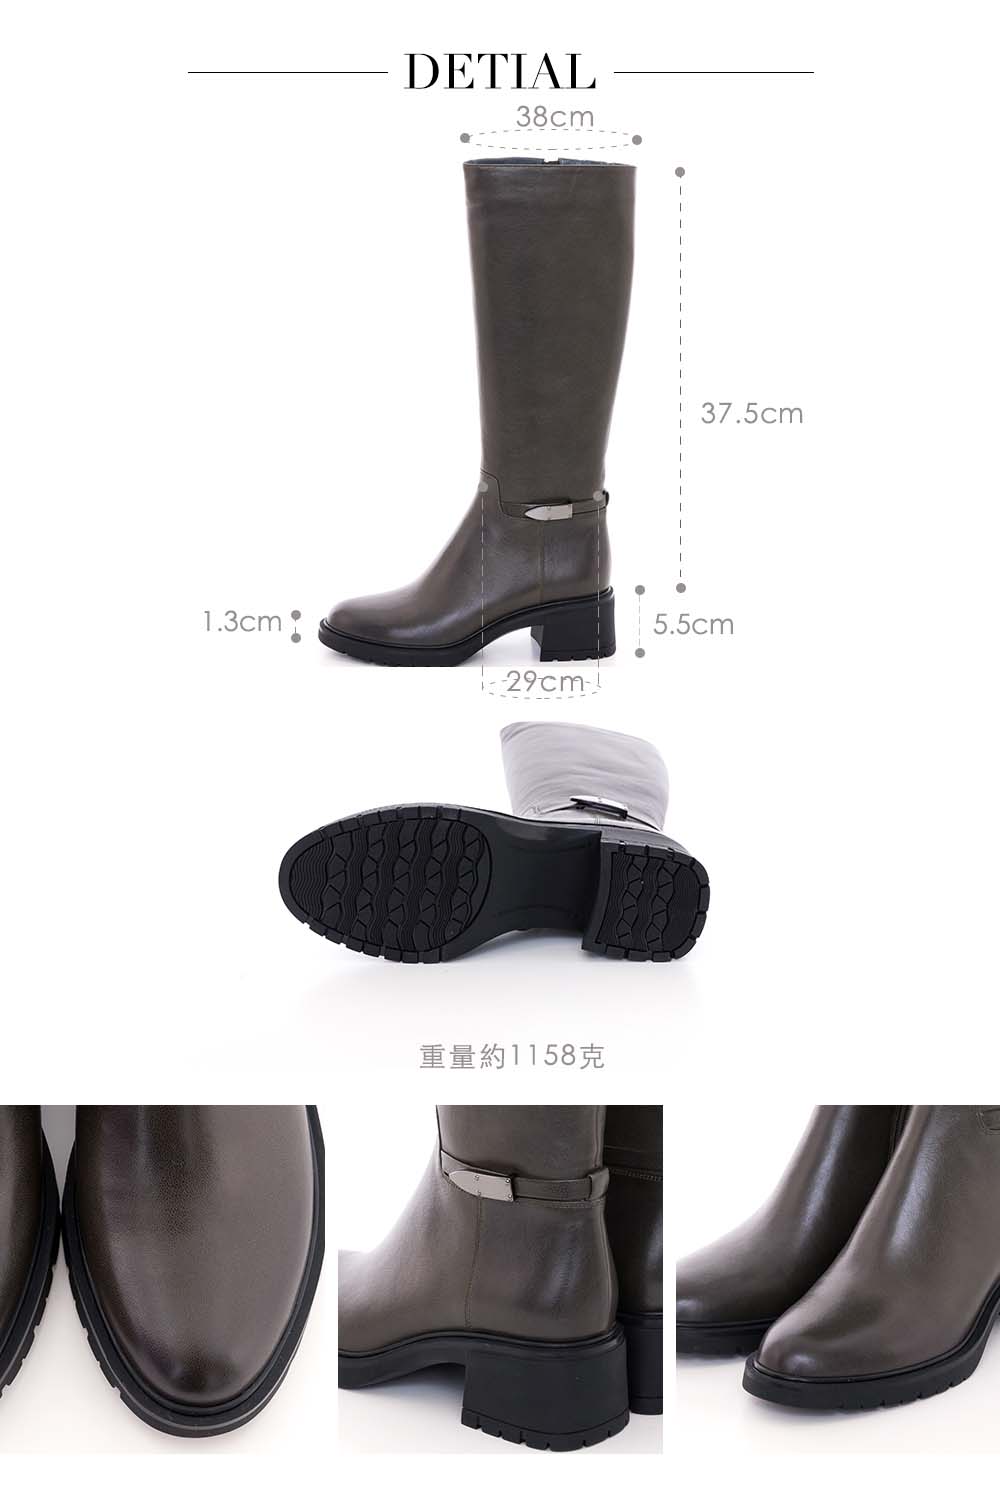 CUMAR 精品質感率性直筒釦環粗跟長靴(軍綠色)優惠推薦